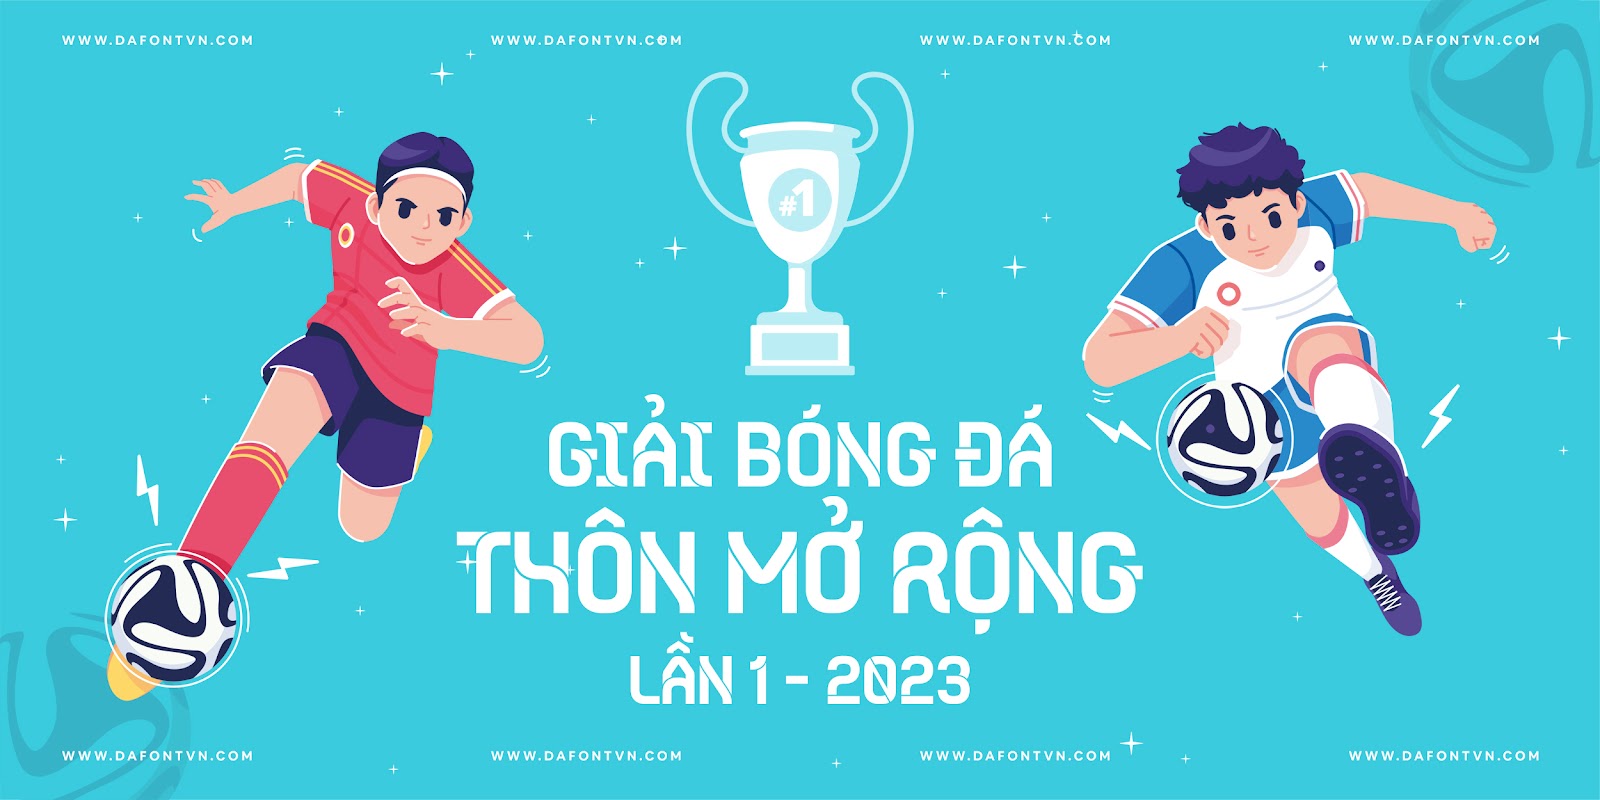 Bridge Type (Euro 2020) Font Việt Góa pic2